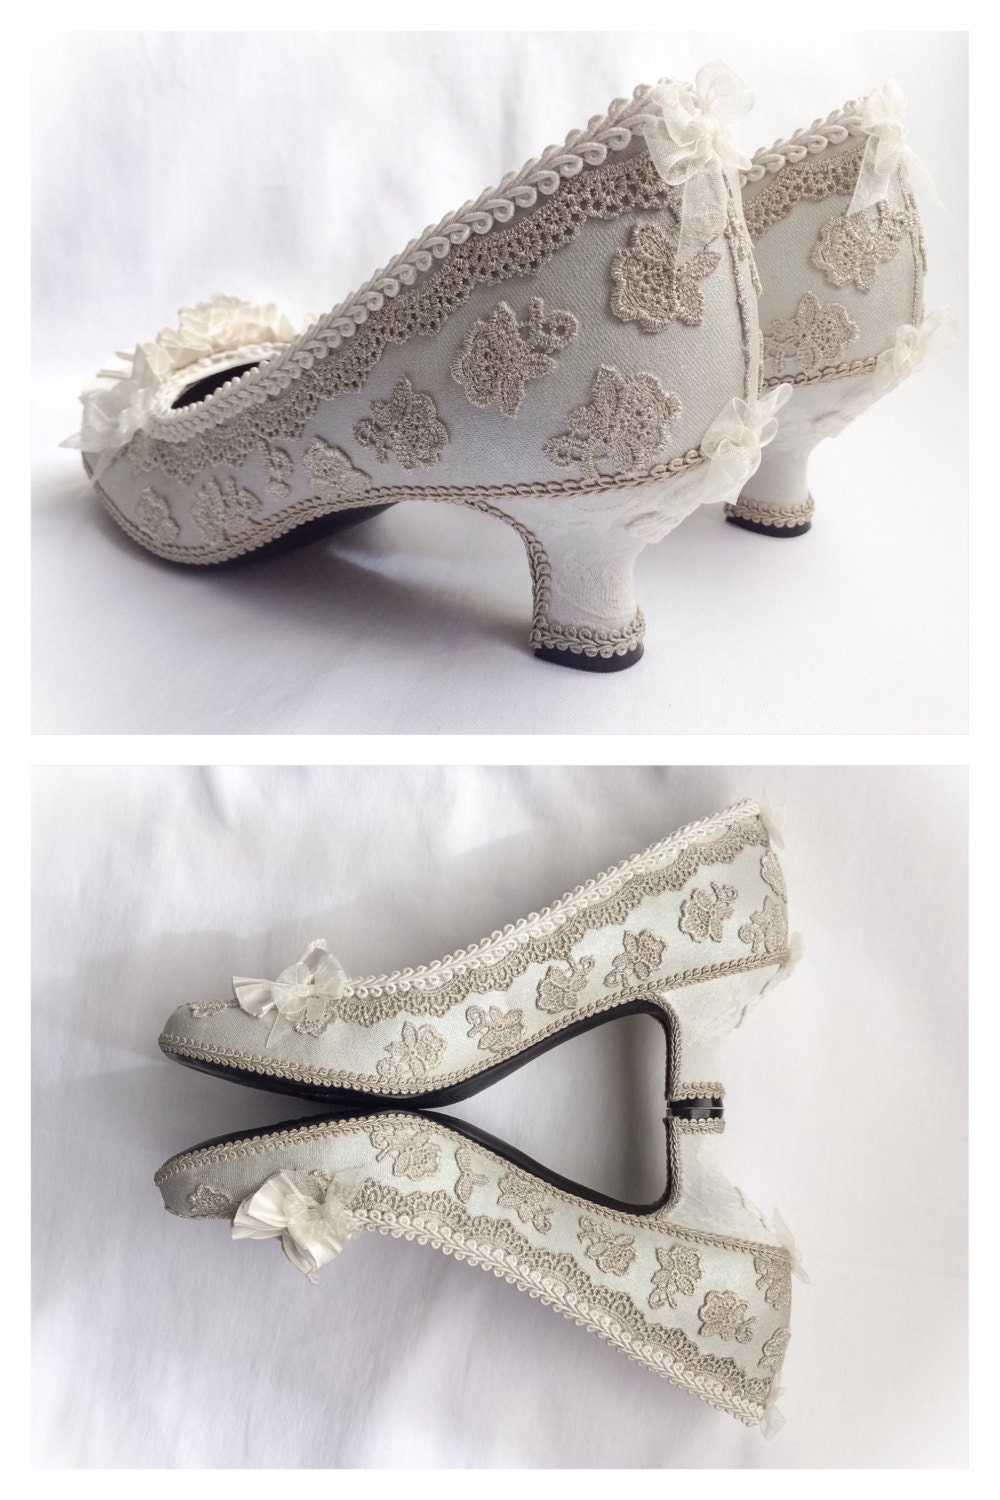 CUSTOM Wedding Shoes Marie Antoinette Costume High Heels Pumps | Etsy